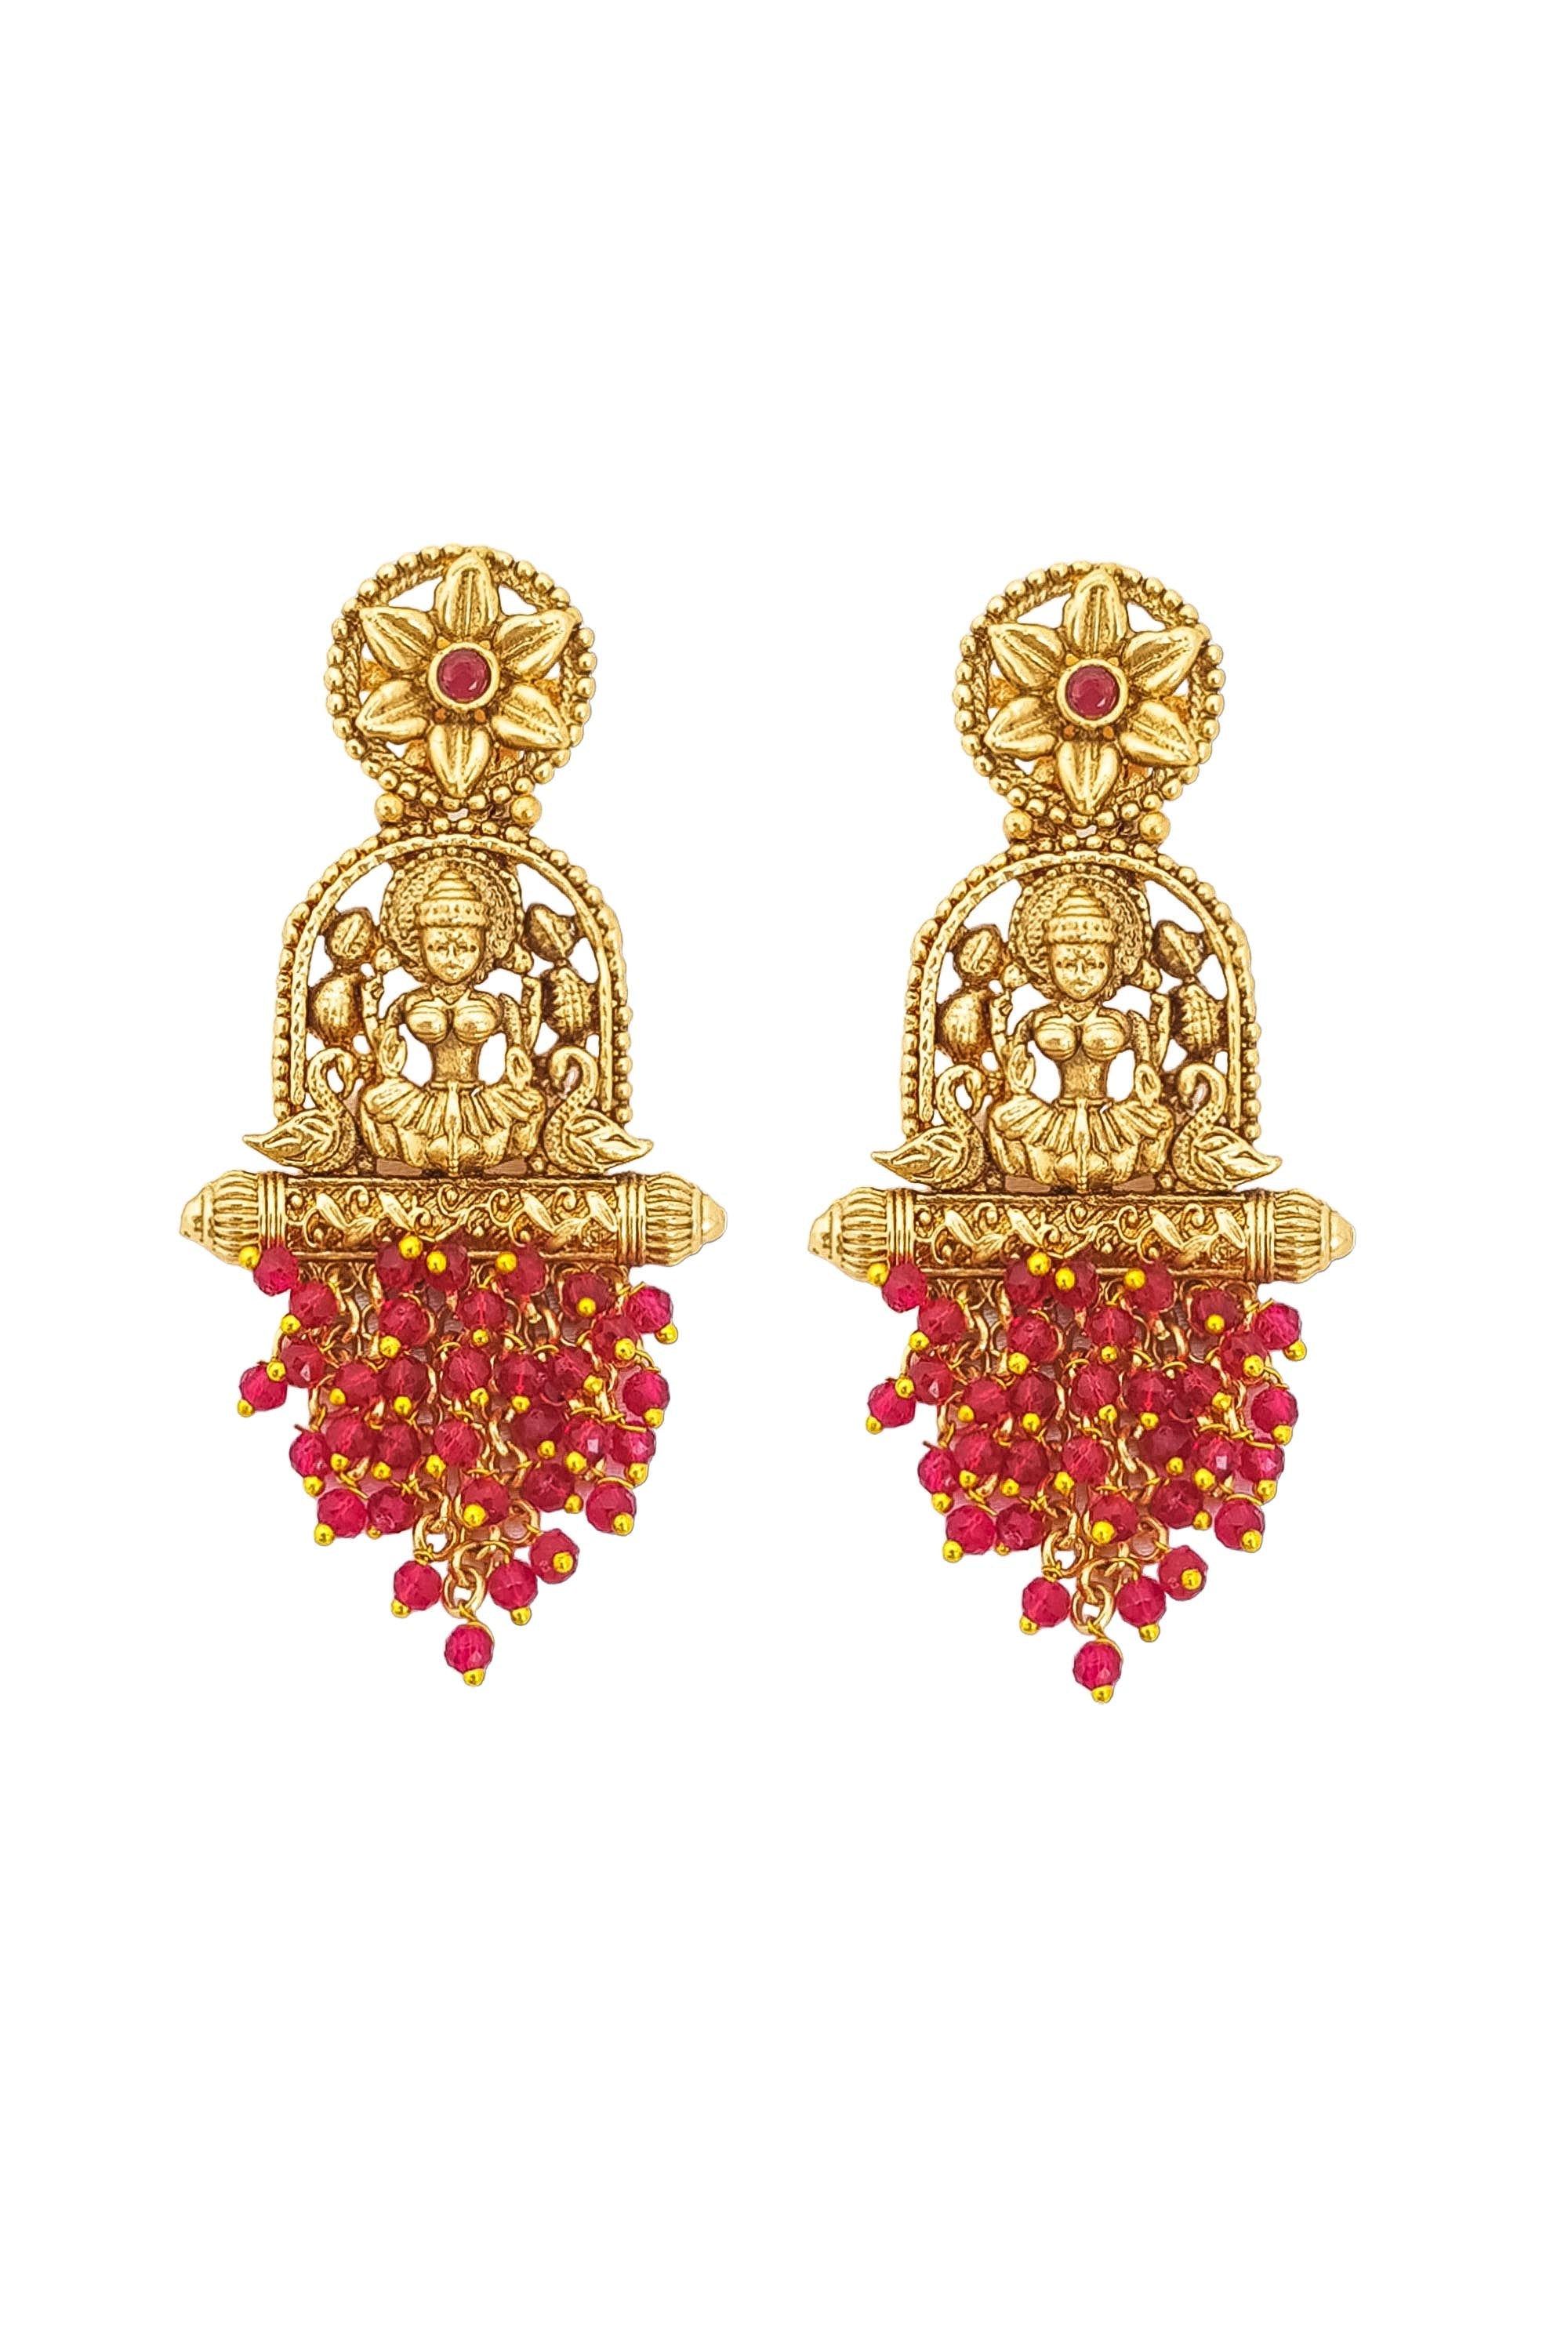 Designer Temple earrings Jhumka 17375N